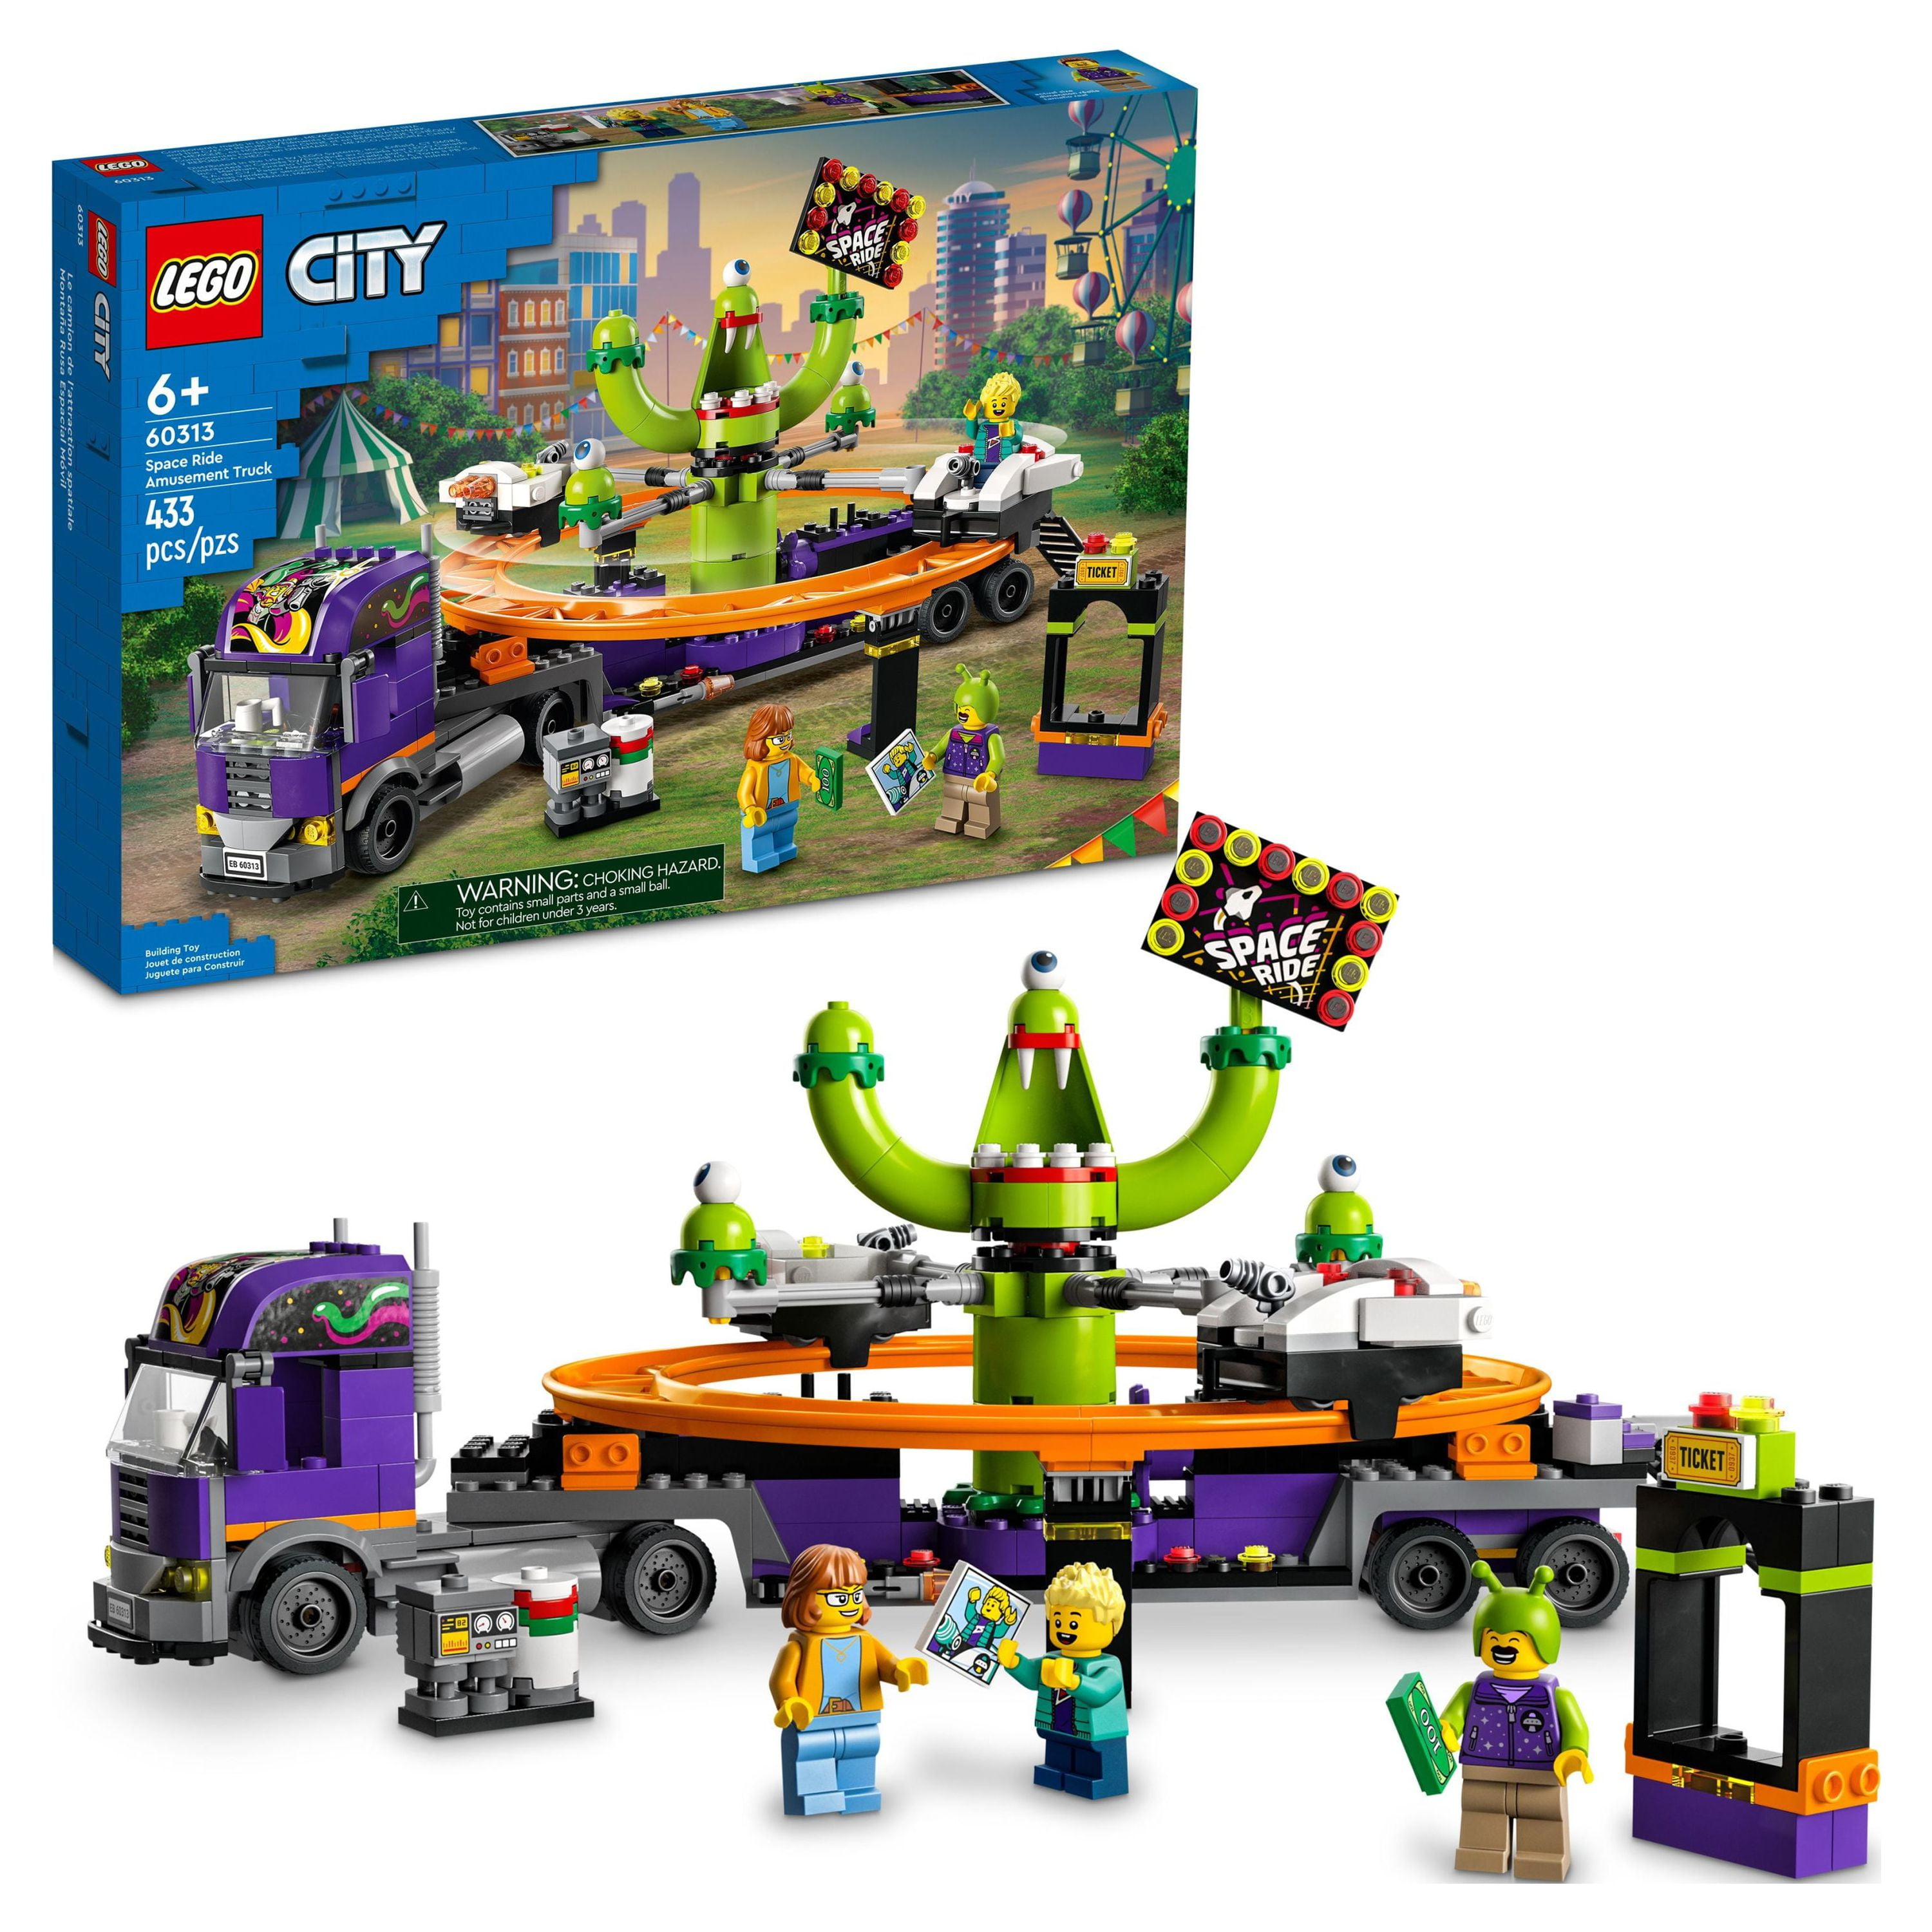 13 sets de Lego en oferta por el Día el Niño para peques de todas las edades